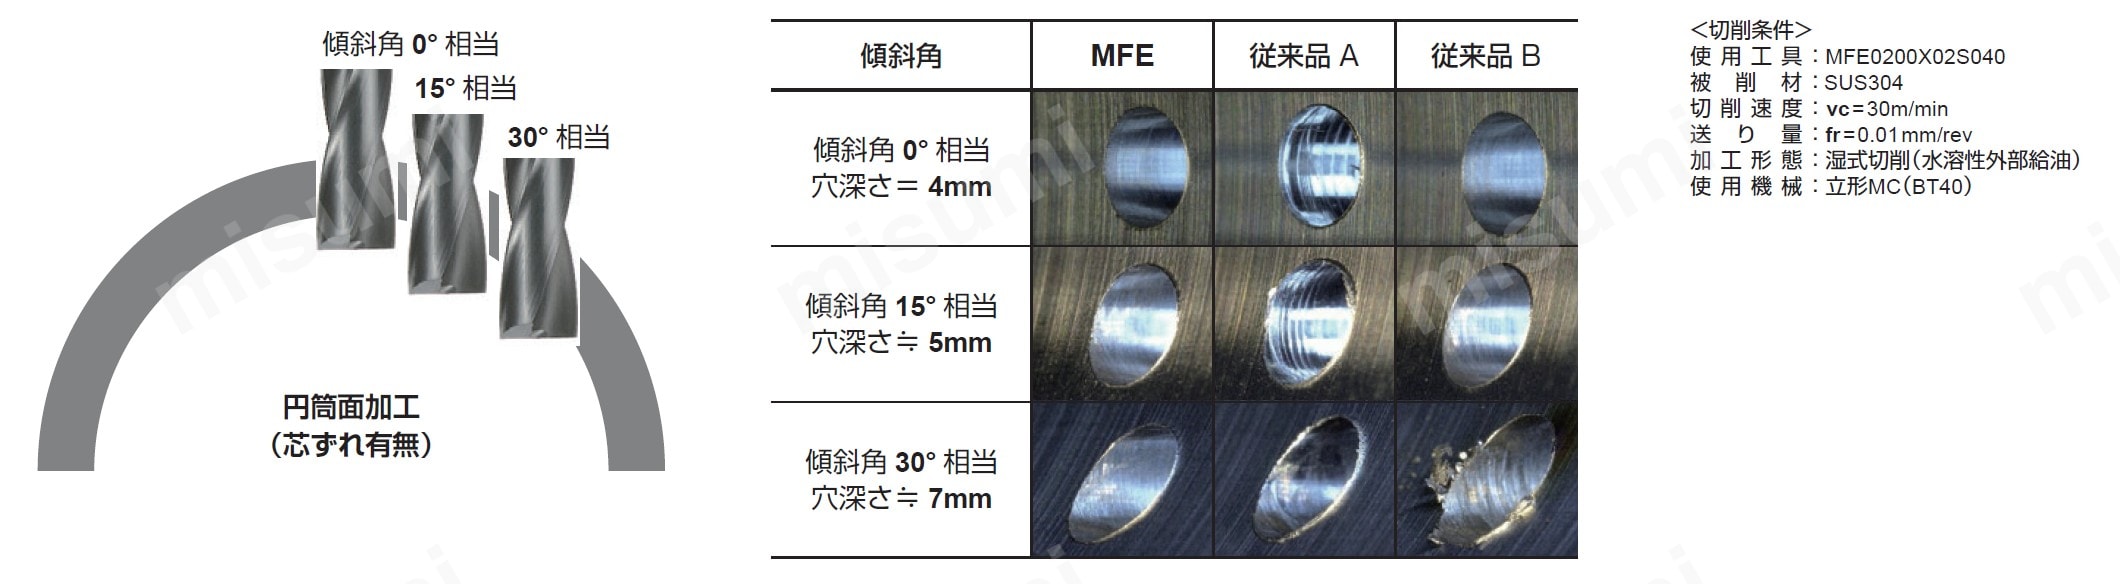 座ぐり加工用超硬ソリッドドリル MFE | 三菱マテリアル | MISUMI(ミスミ)